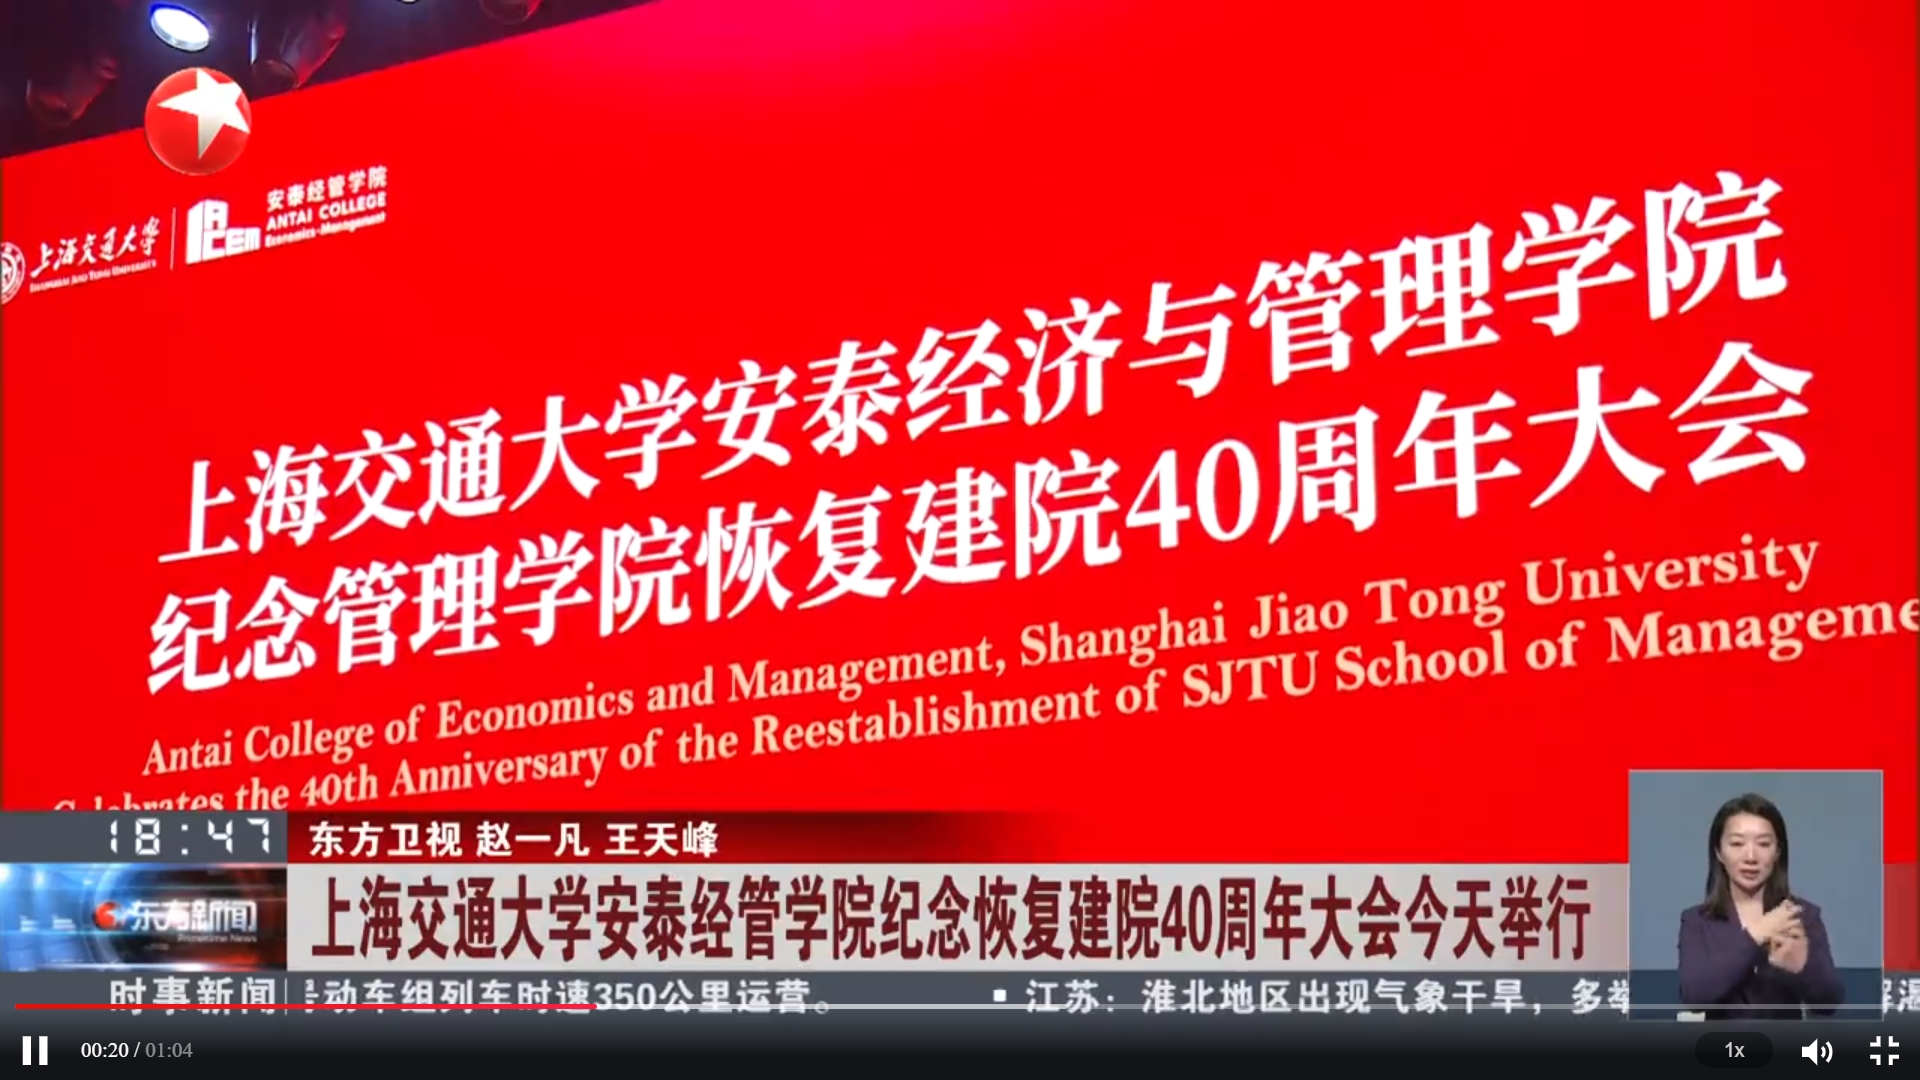 东方卫视报道上海交通大学安泰经管学院纪念恢复建院40周年大会今天举行